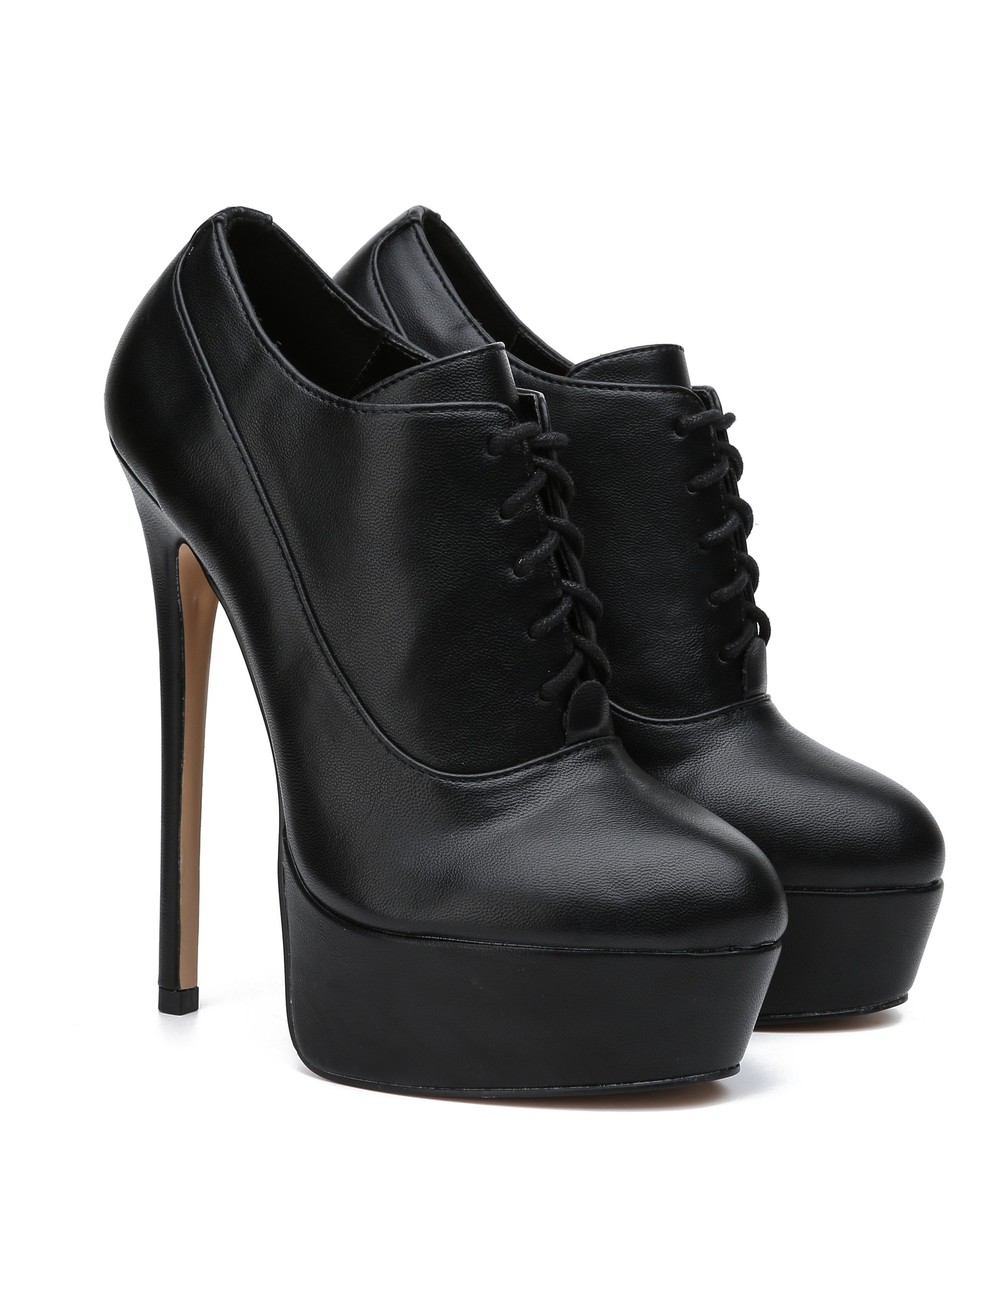 Giaro SASSY BLACK MATTE OXFORD PUMPS - Shoebidoo Shoes | Giaro high heels